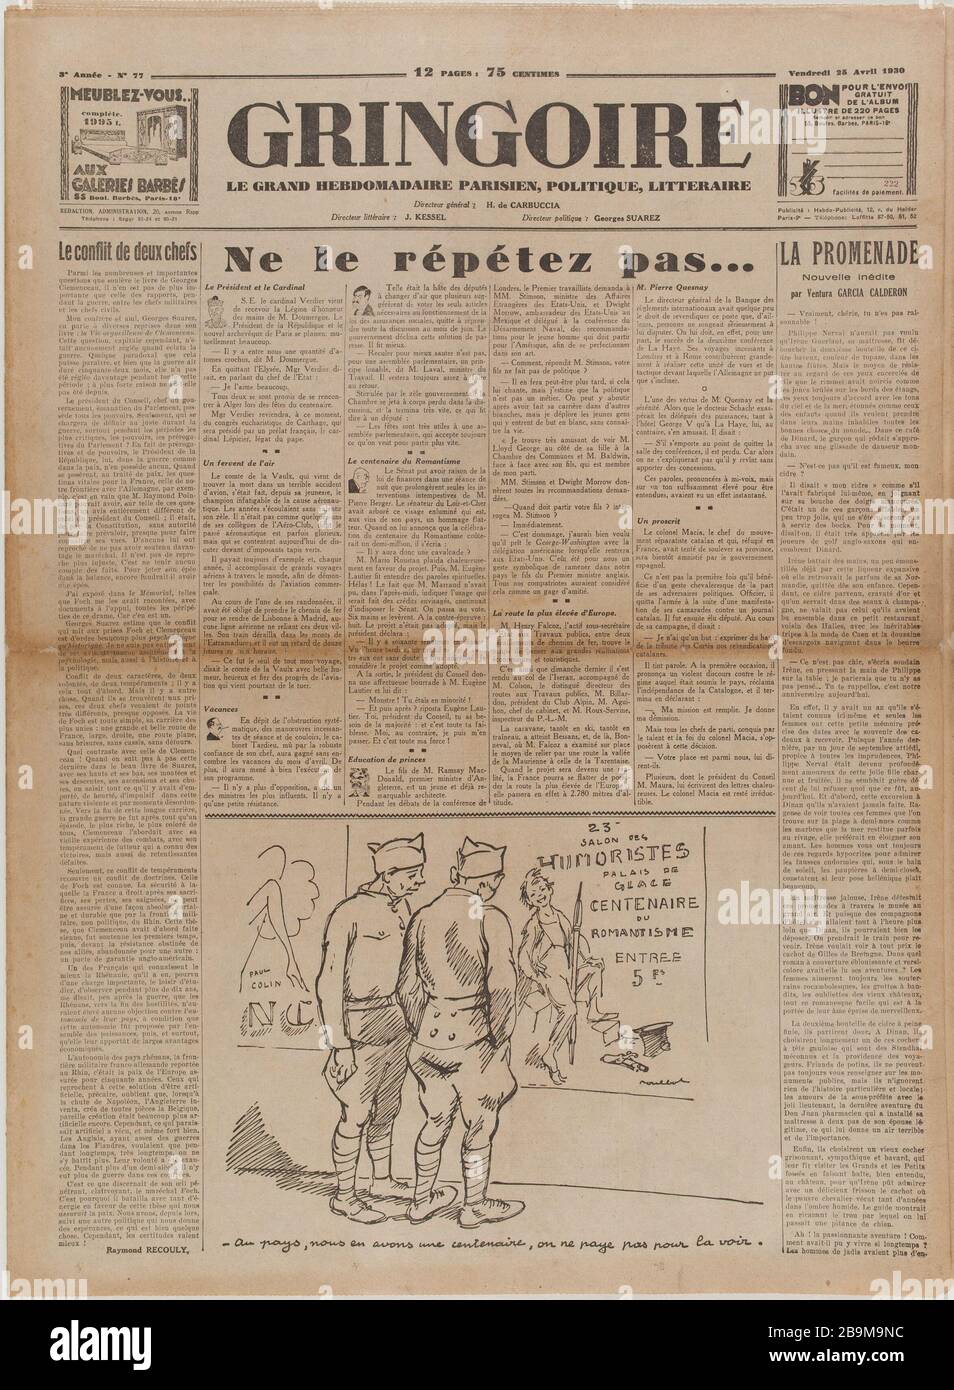 Newspaper 'Gringoire' of April 25, 1930 Journal 'Gringoire' du 25 avril 1930. Papier imprimé, 1930. Musée du Général Leclerc de Hauteclocque et de la Libération de Paris, musée Jean Moulin. Stock Photo